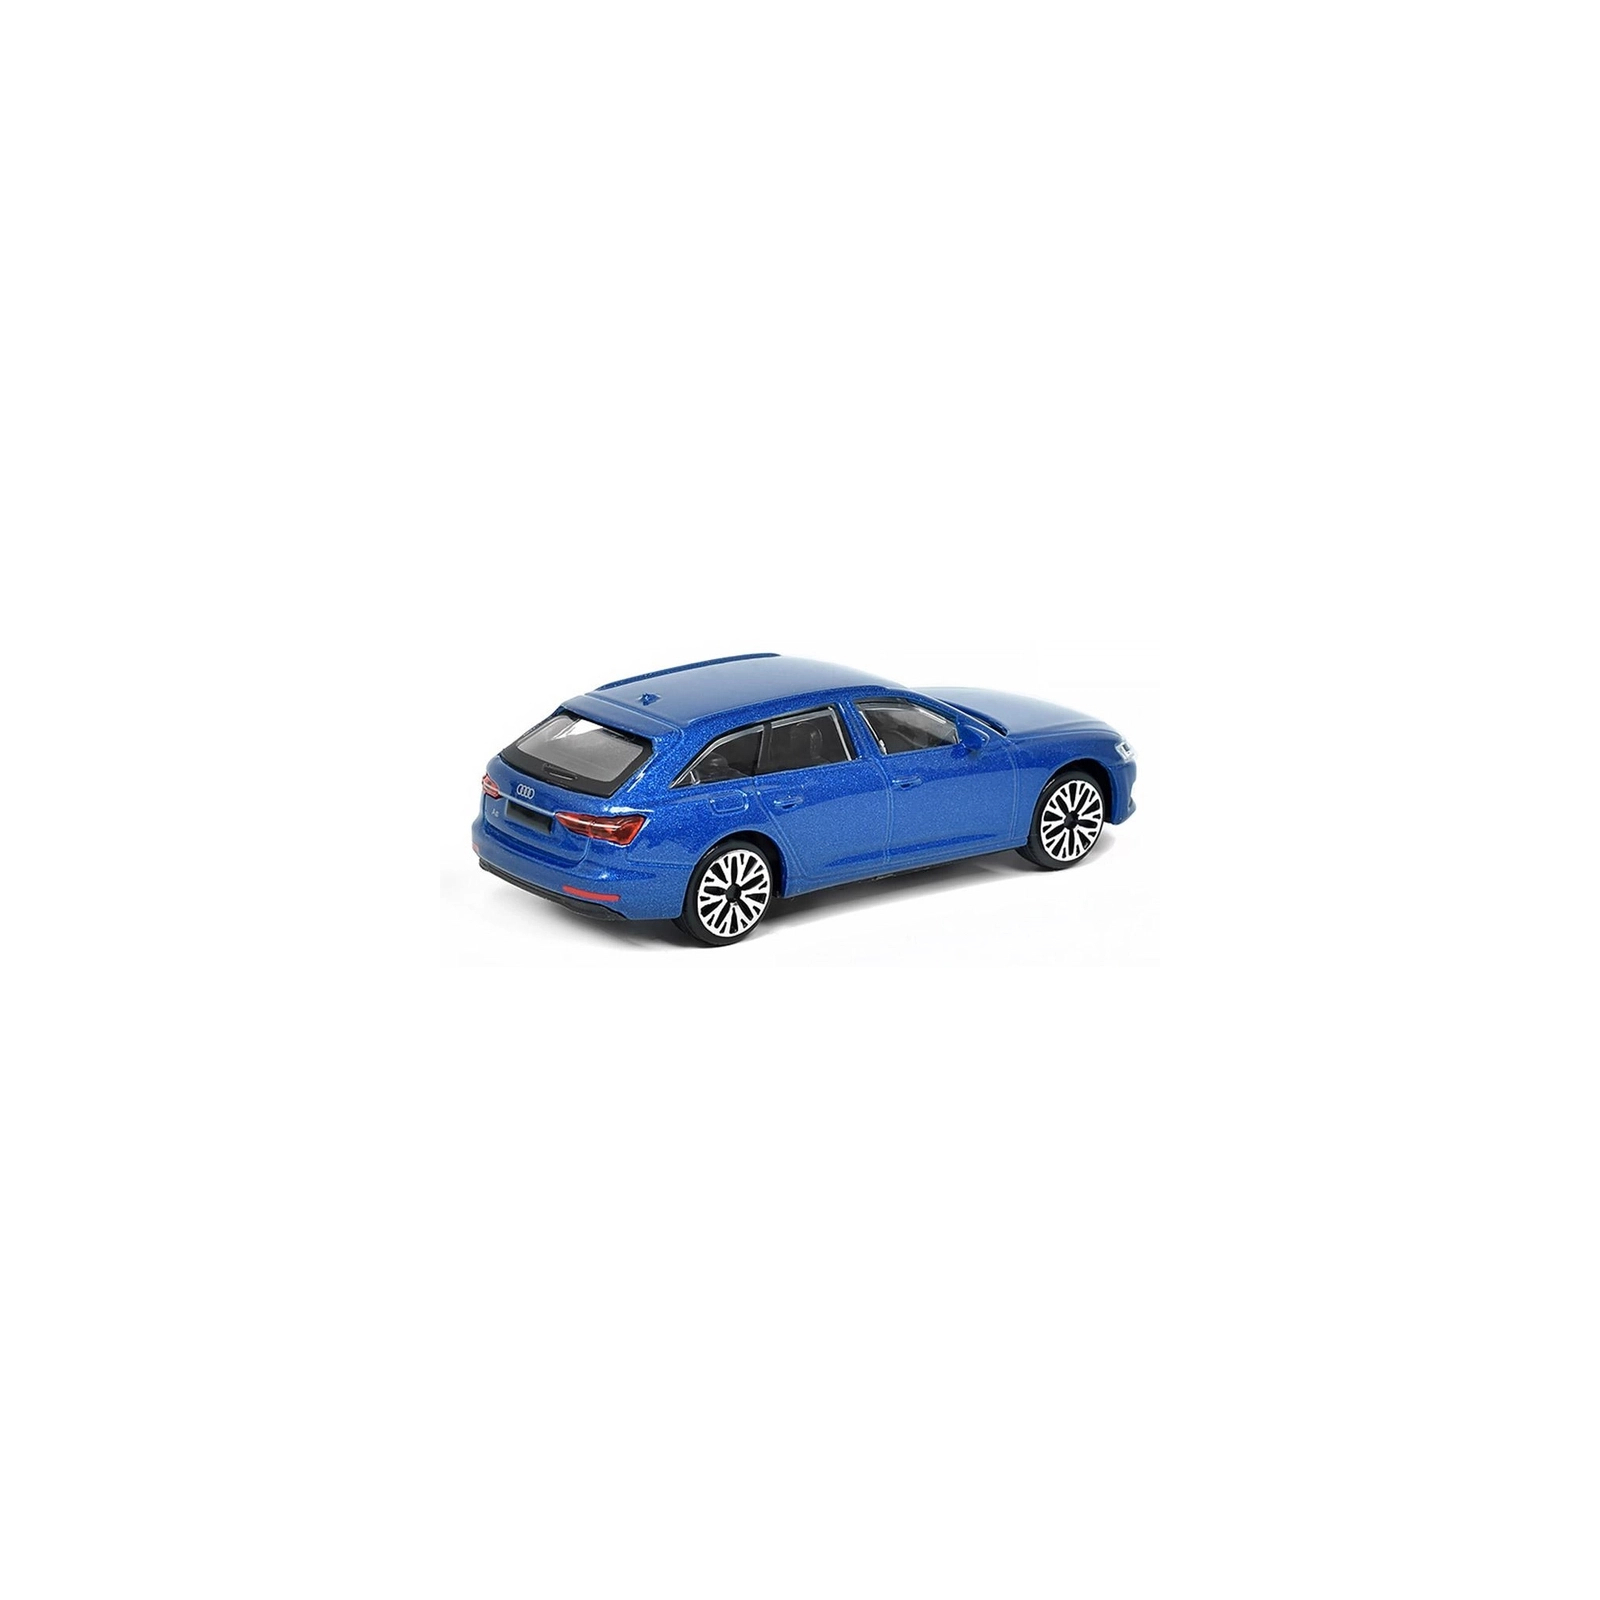 Спецтехника Bburago Эвакуатор с автомоделью Audi A6 Avant (18-31418) изображение 5